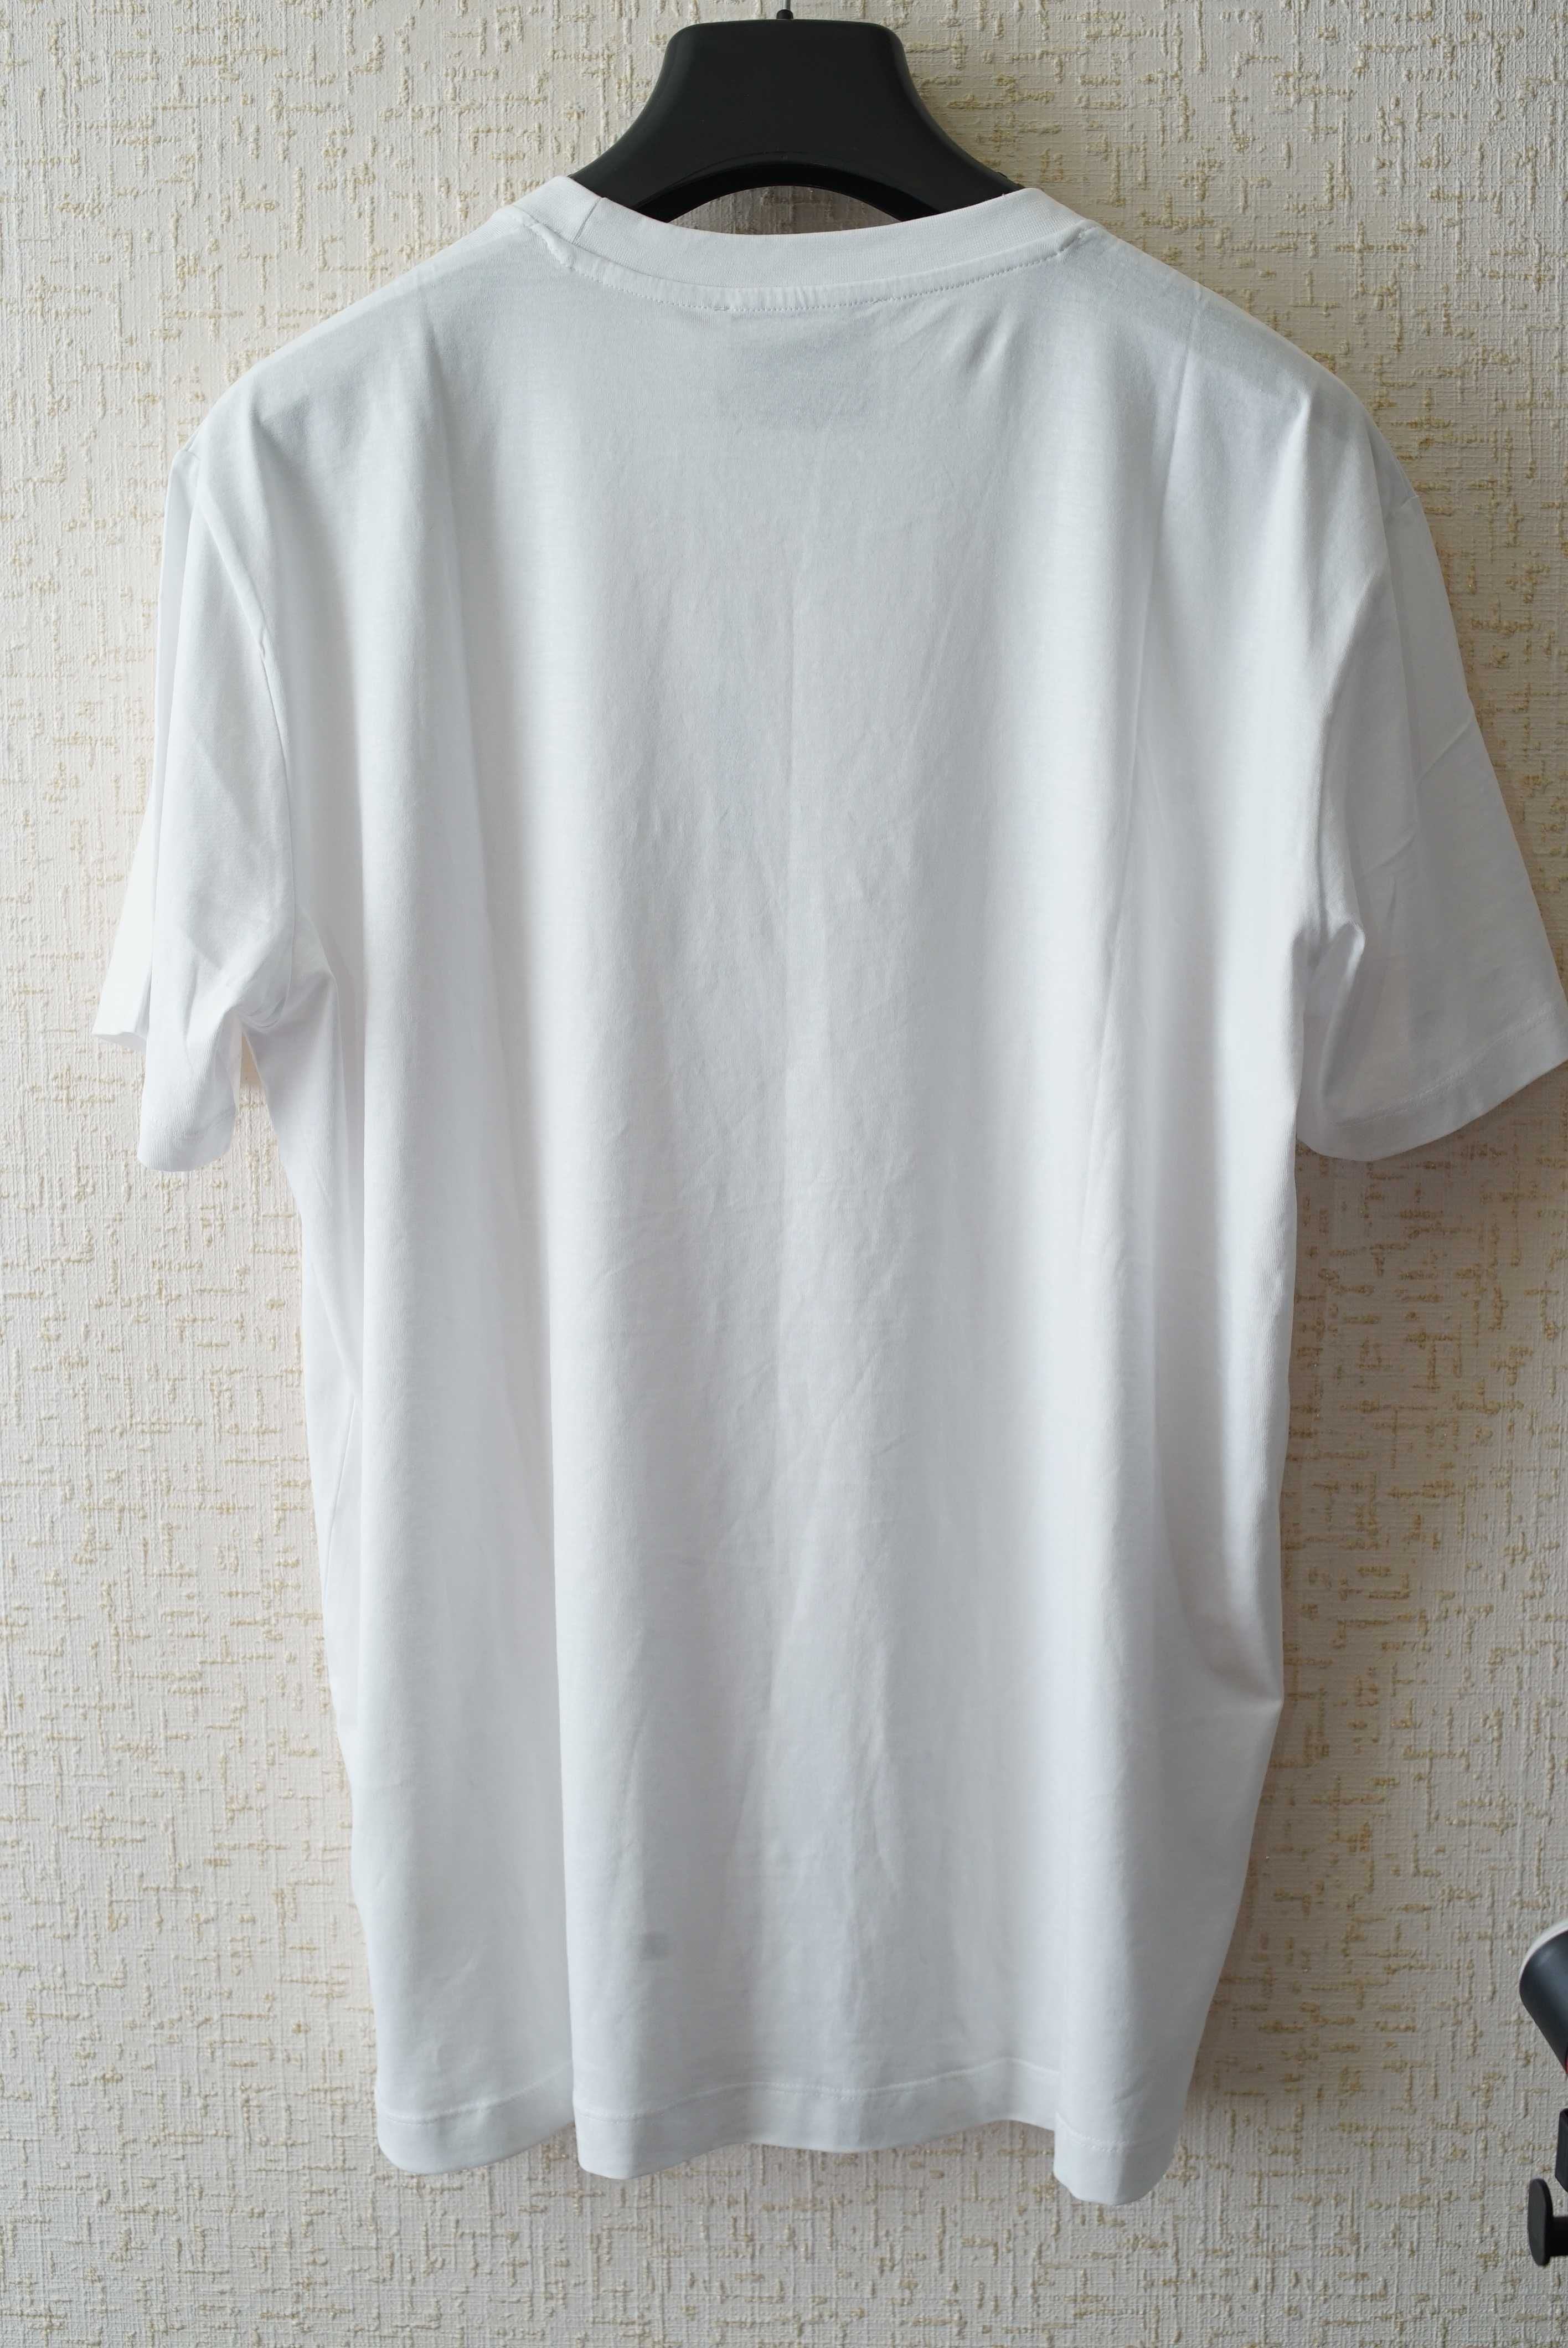 Мужская футболка RICHMOND "X" белого цвета.